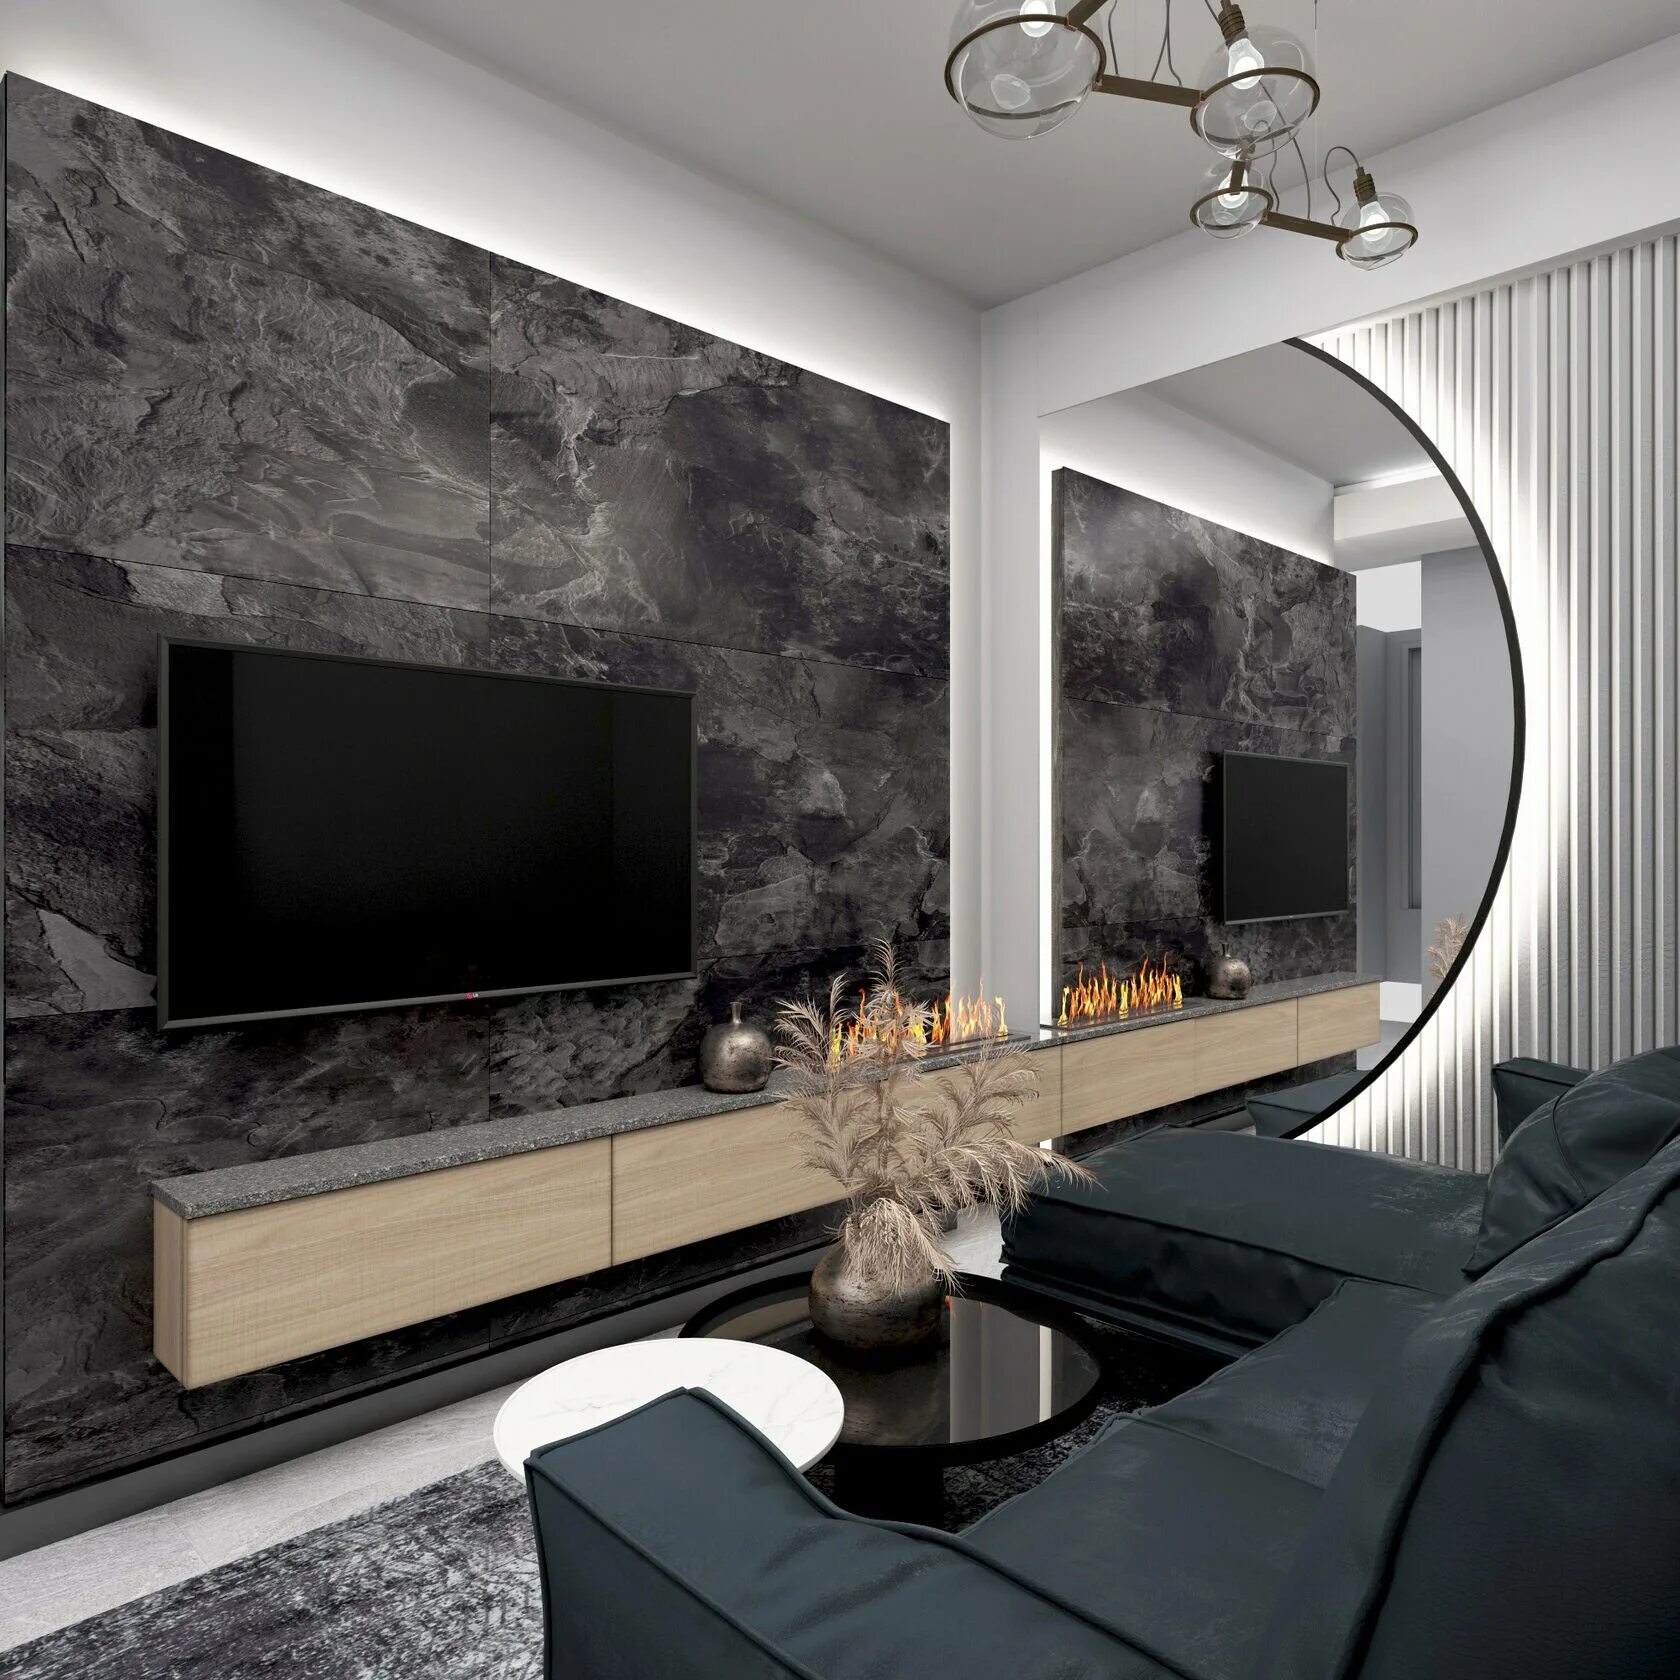 Современная стена с телевизором. Гостиная с биокамином в современном стиле. Биокамин в интерьере гостиной с телевизором. Интерьер с биокамином в гостиной современном стиле. Телевизор в современном интерьере.